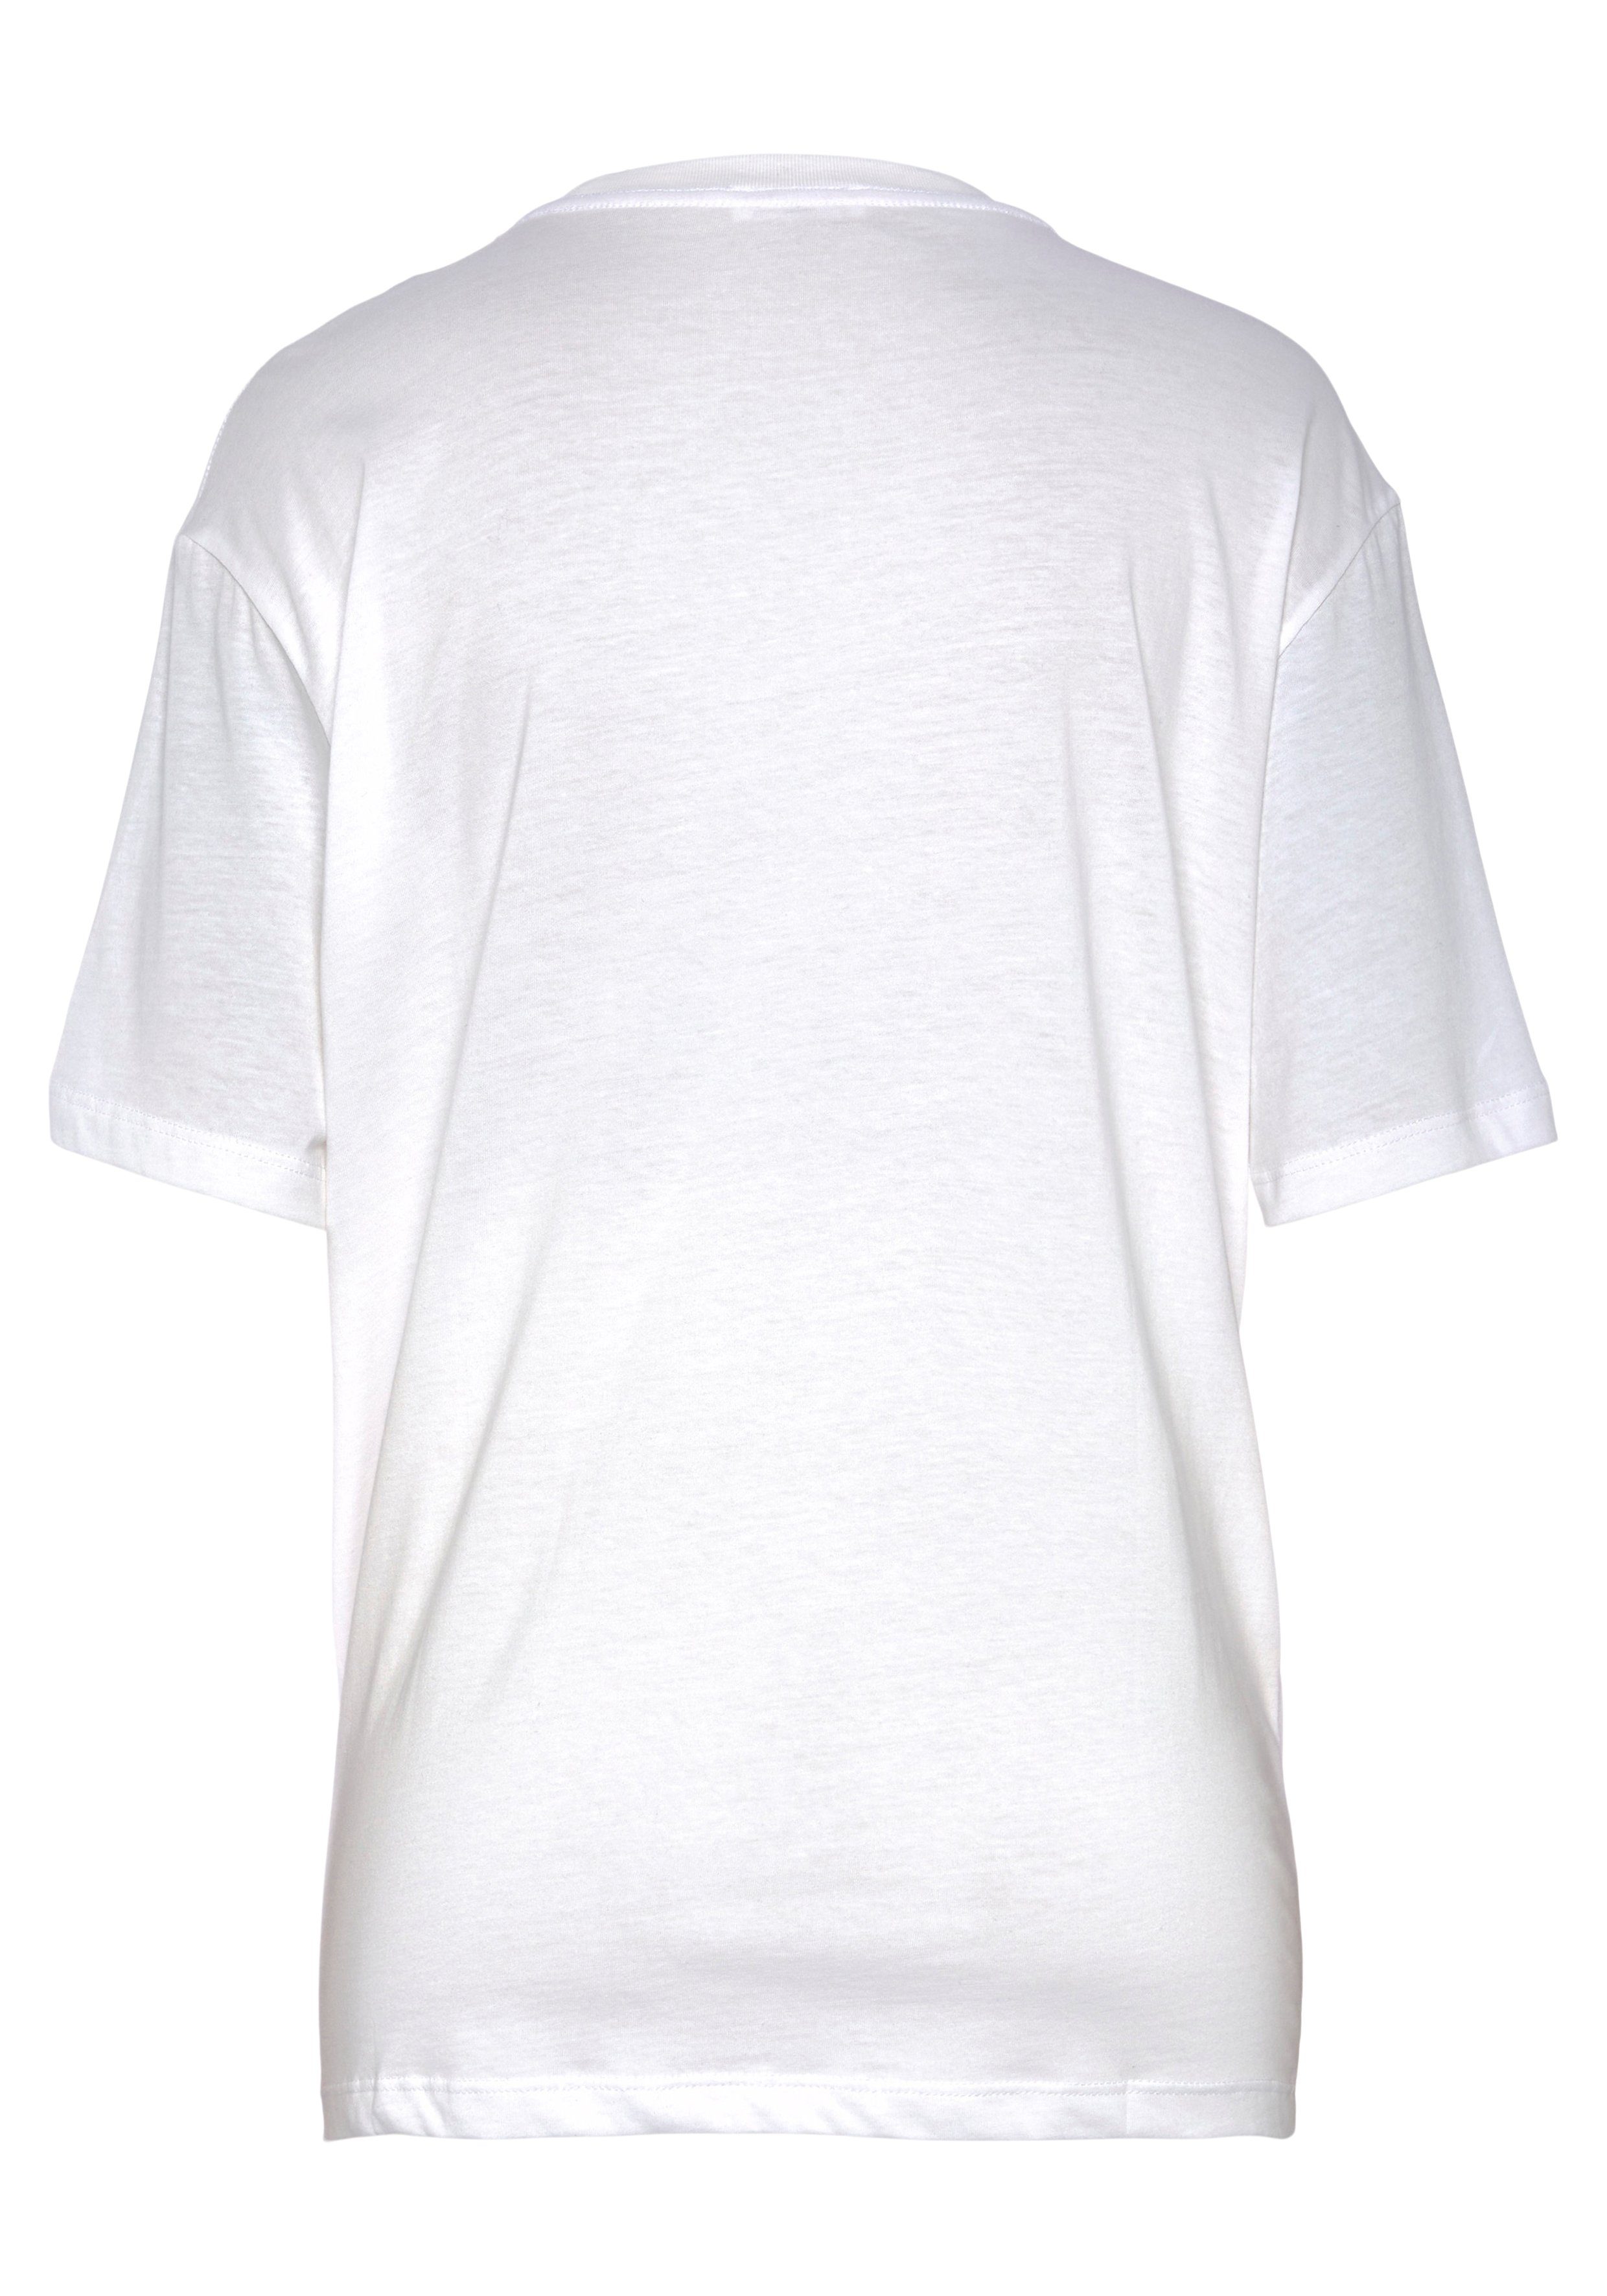 Replay T-Shirt white